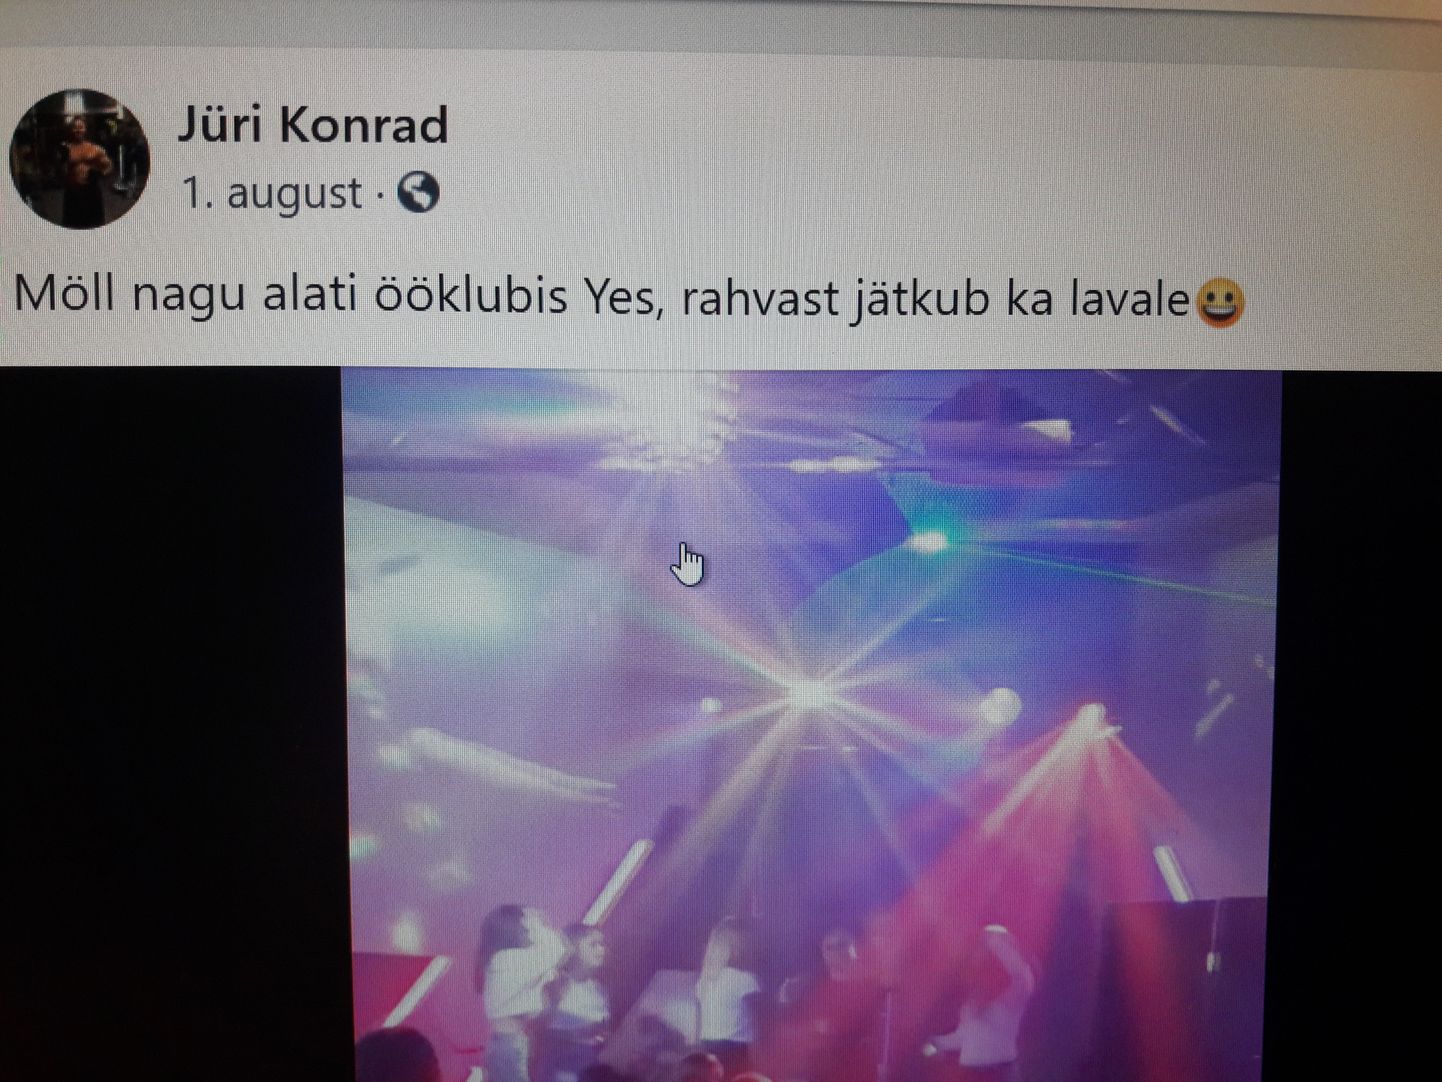 Jüri Konrad on ise 1. augustil teinud Facebooki postituse, milles märgib, et tema ööklubis käib möll ja rahvast jätkub ka lavale.